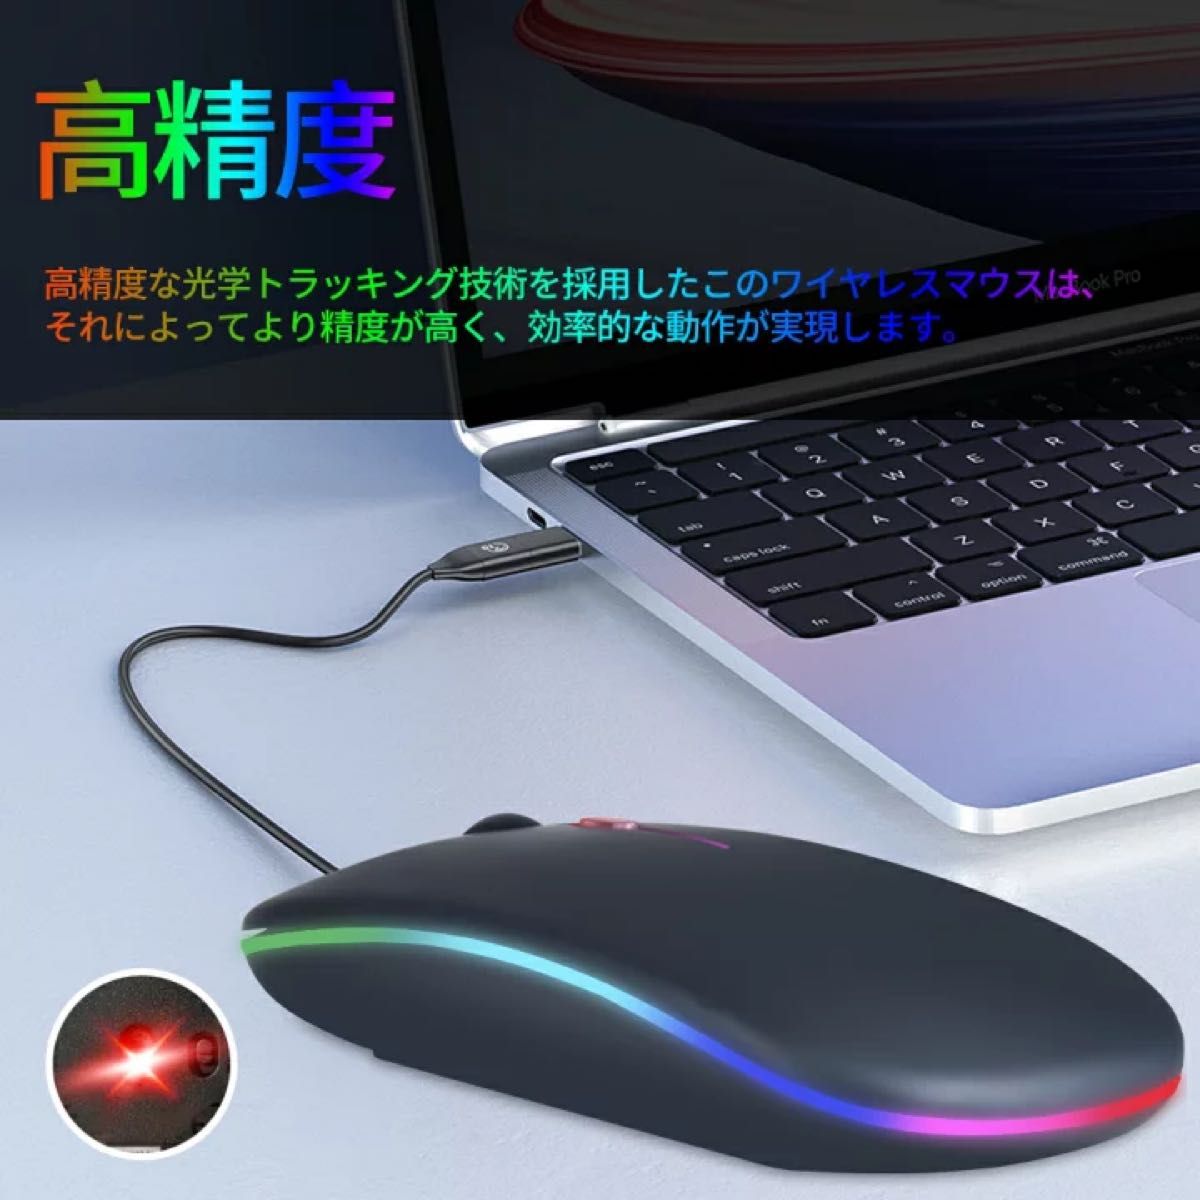 Bluetoothマウス パソコン シルバー 超薄型 静音 光るワイヤレスマウス